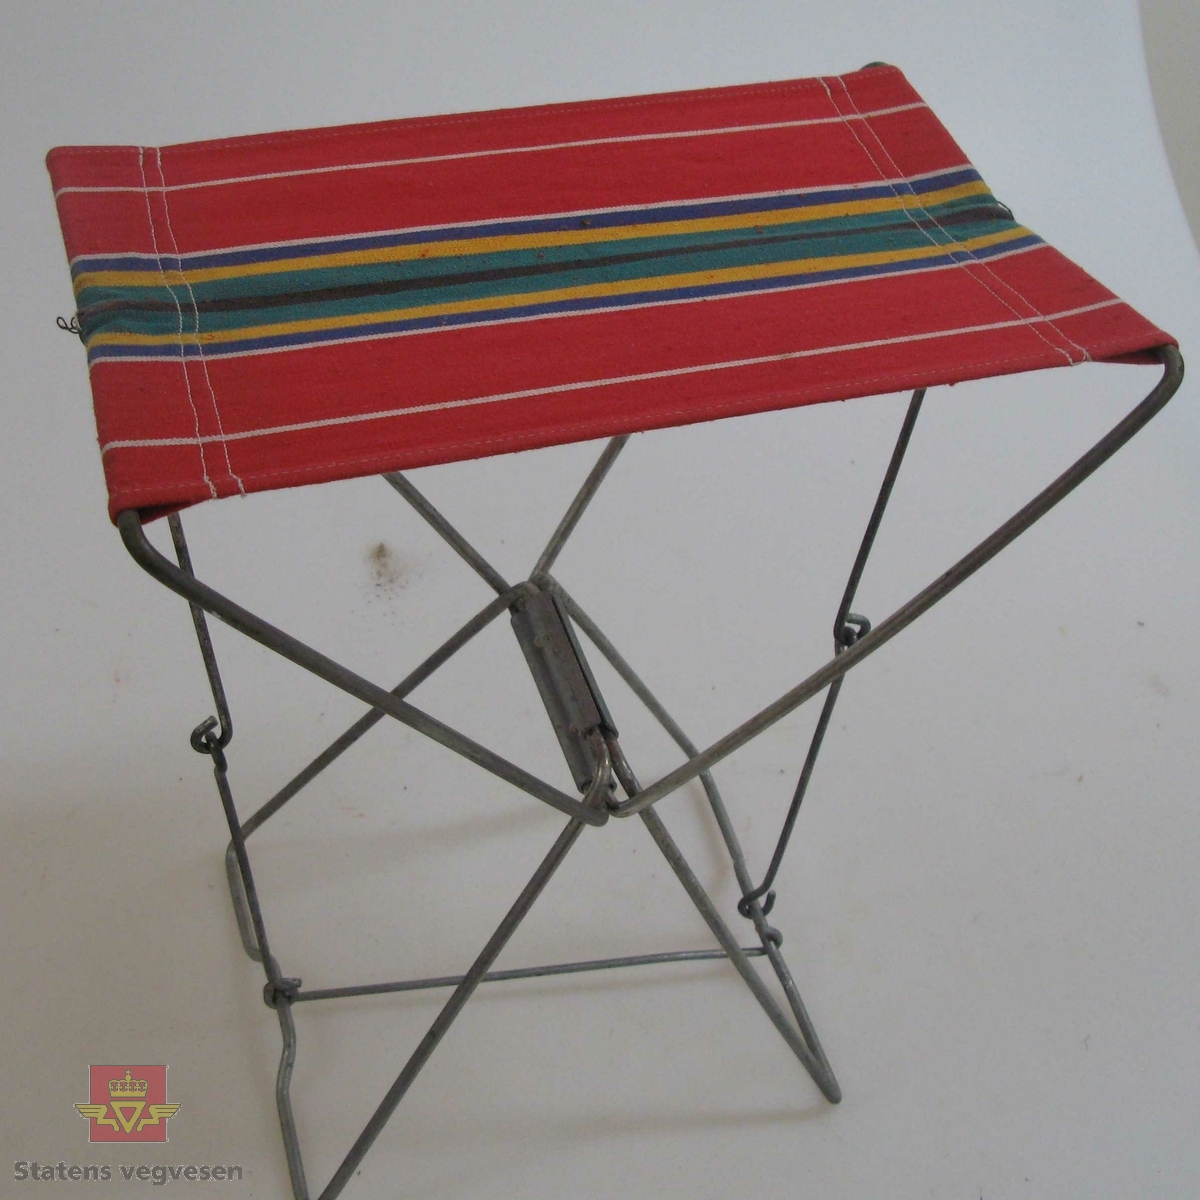 Enkel campingstol med rammeverk av stål og trekk av tekstil. Trekket er flerfarget med striper, hovedfarge er rød. Stolen kan pakkes helt ihop når den ikke er i bruk.